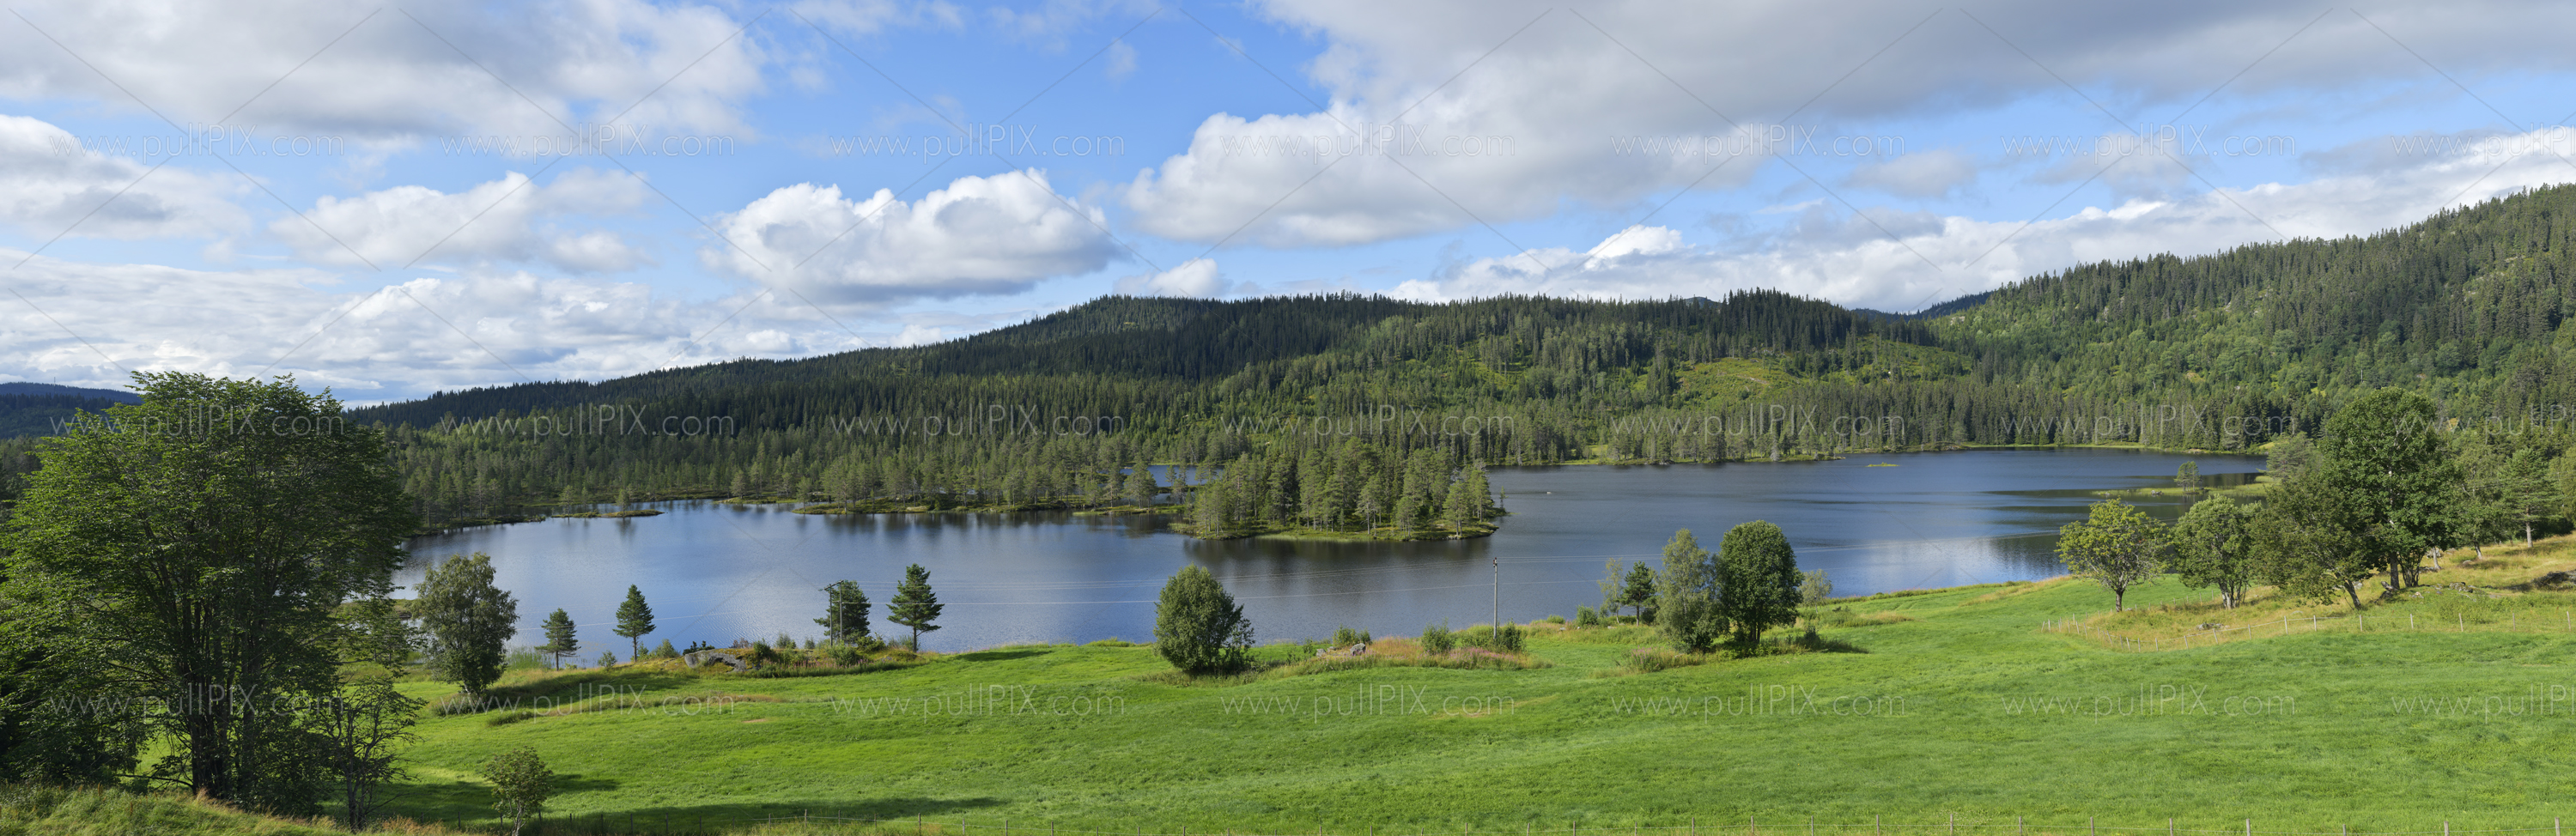 Preview norwegische seenlandschaft.jpg